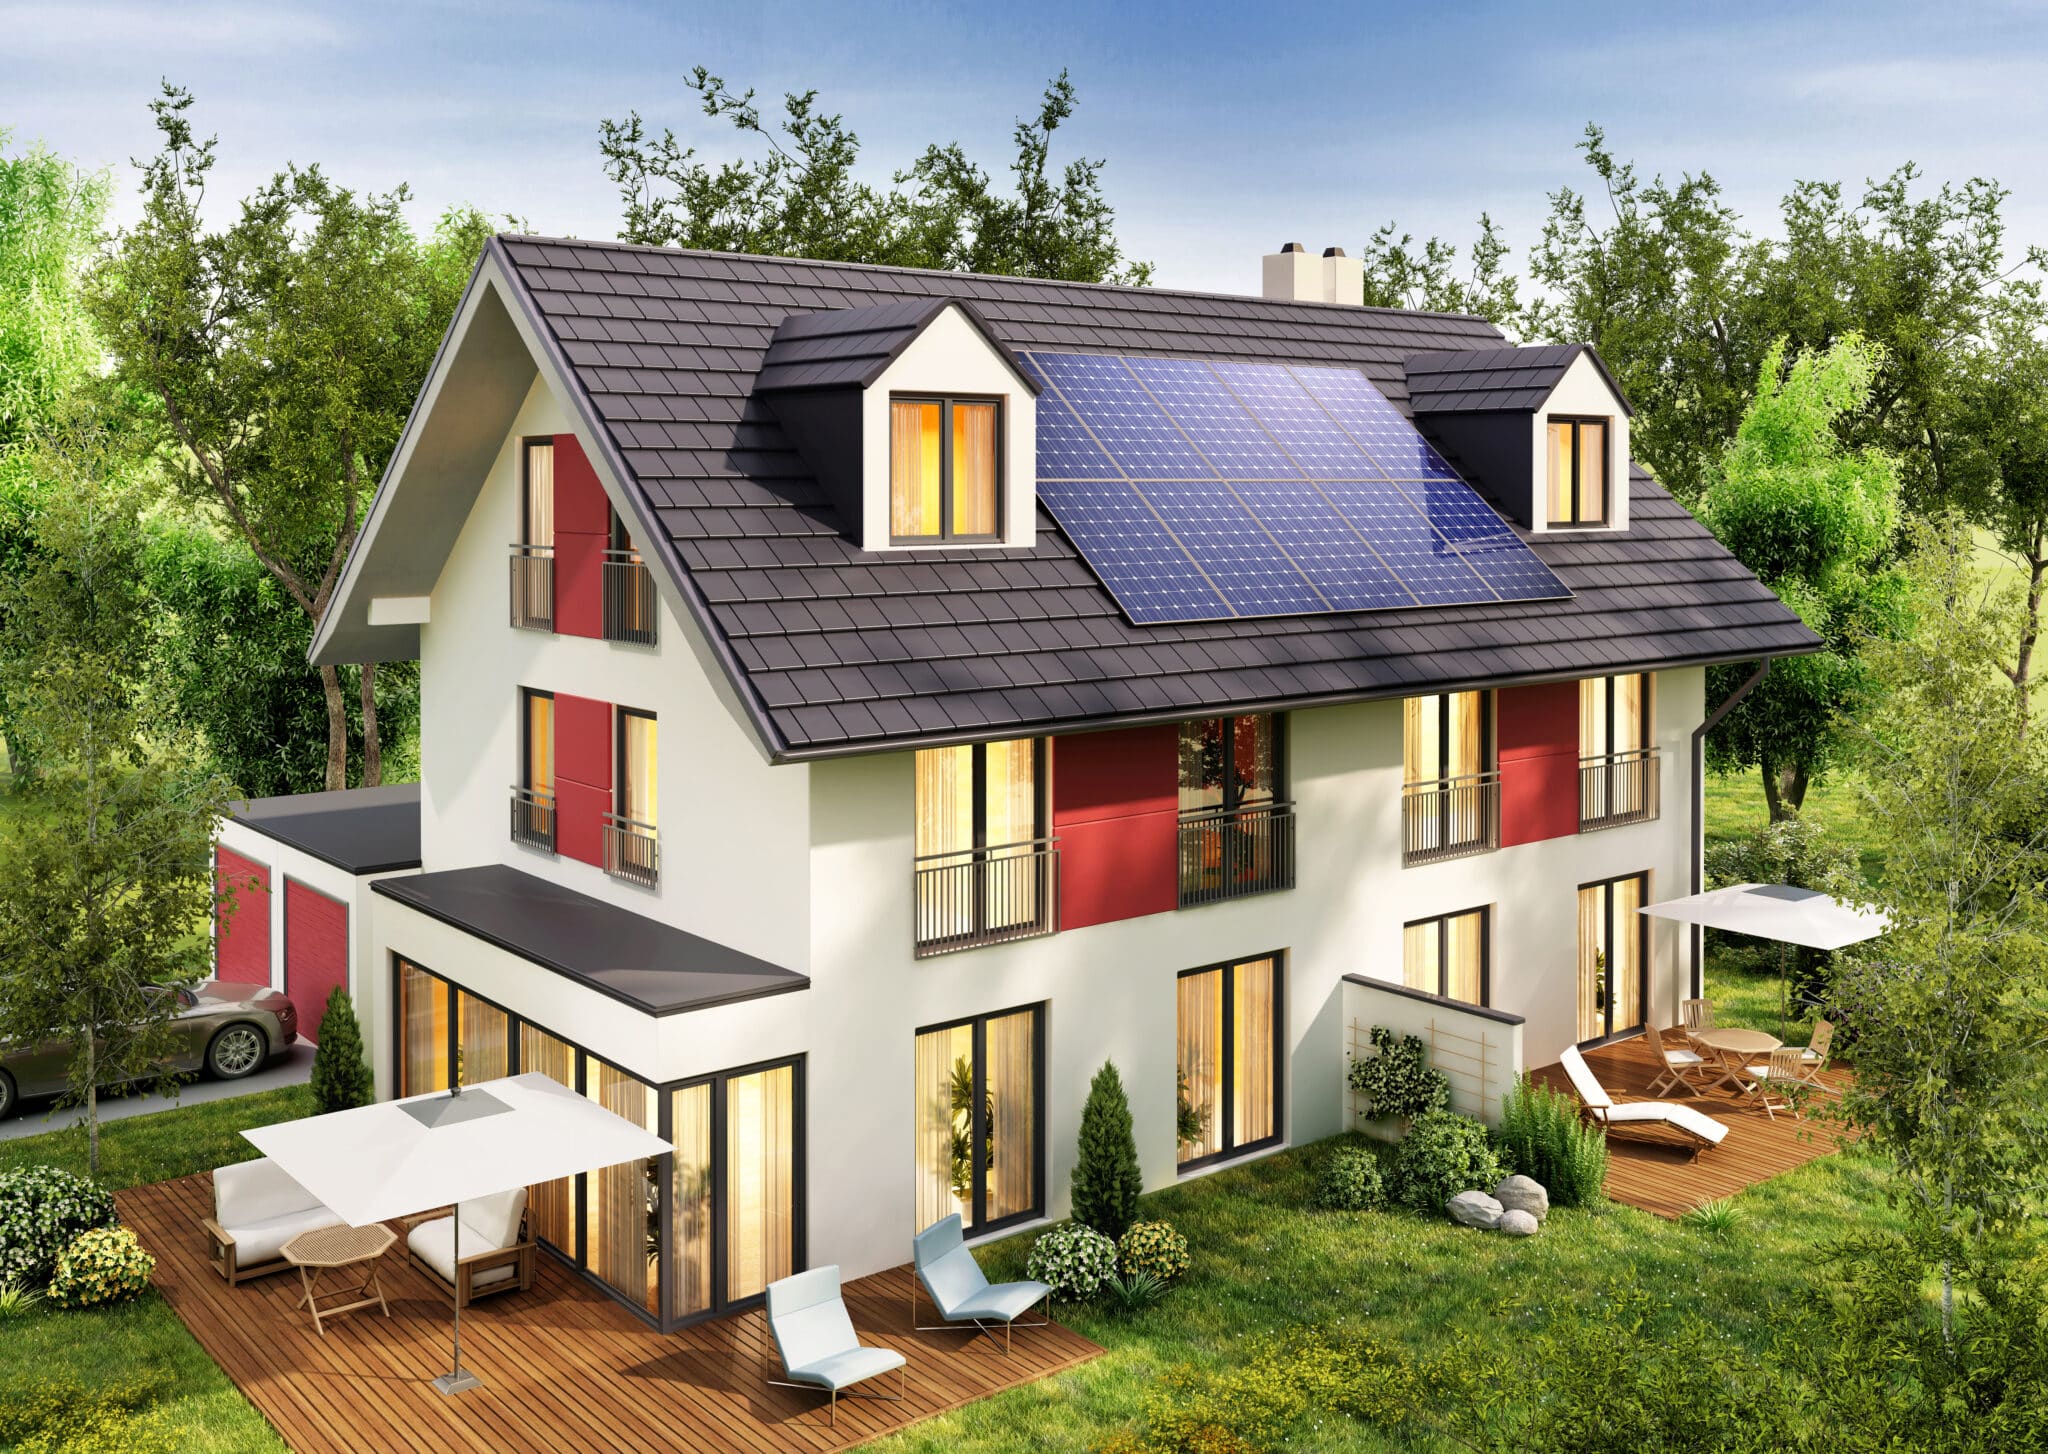 Energy-efficient luxury home